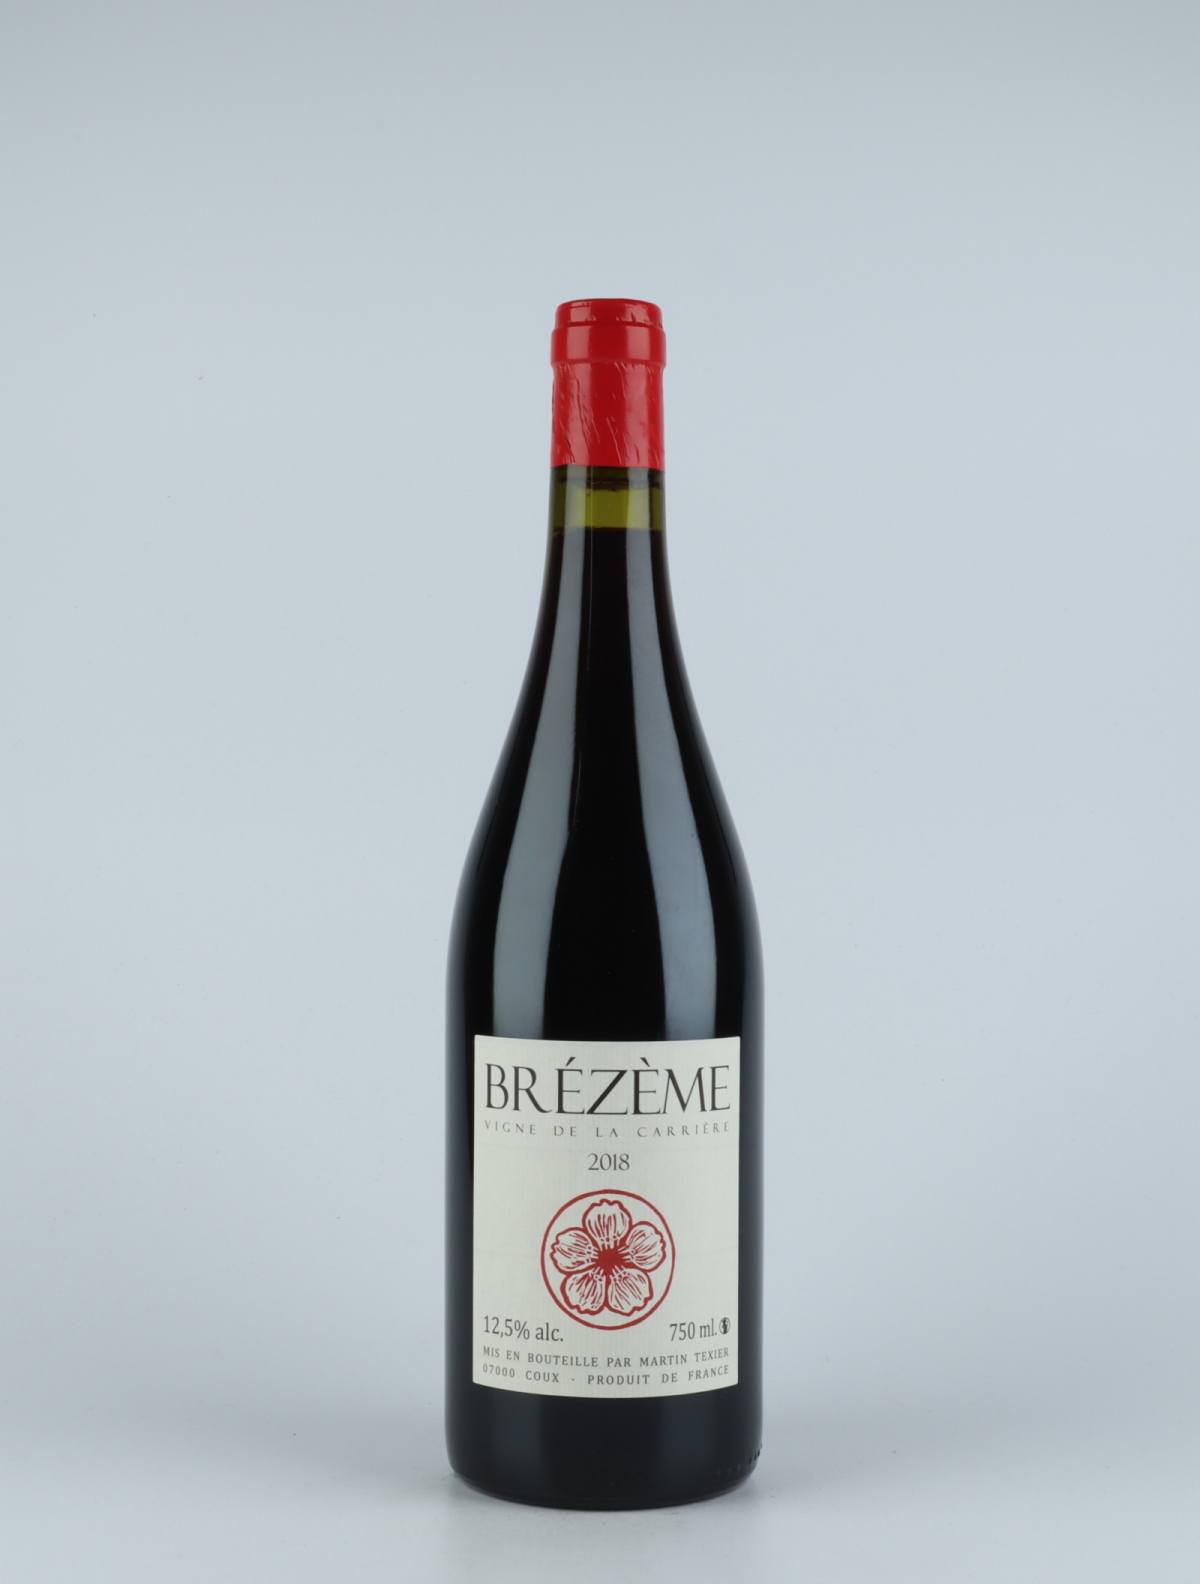 En flaske 2018 Brézème Rødvin fra Martin Texier, Rhône i Frankrig